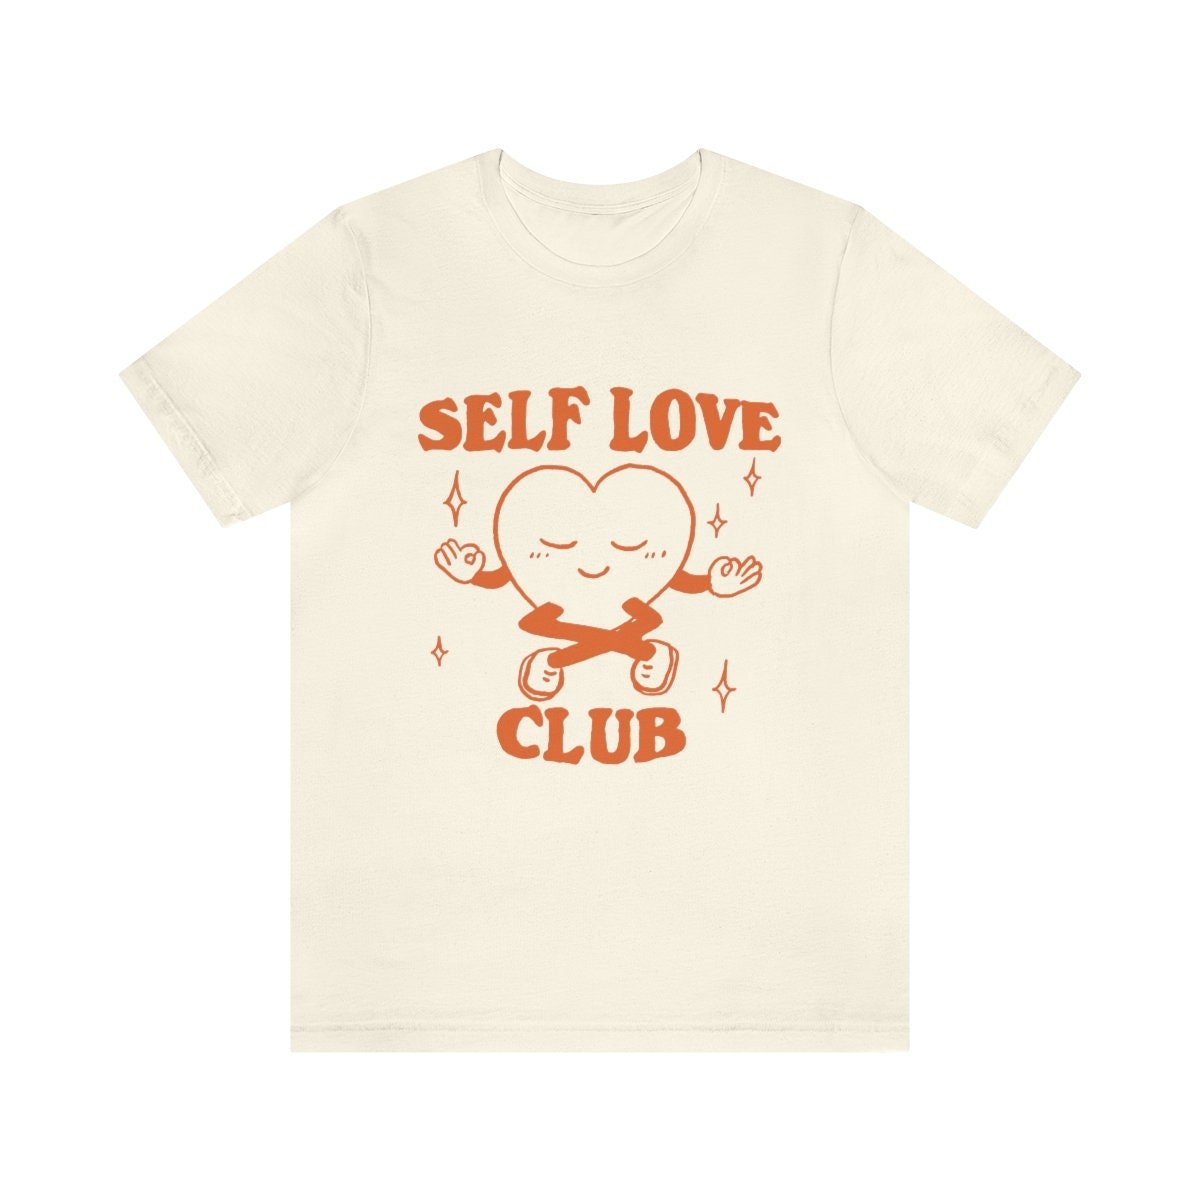 'Self Love Club' Trendy Tshirt - T-shirts - Kinder Planet Company